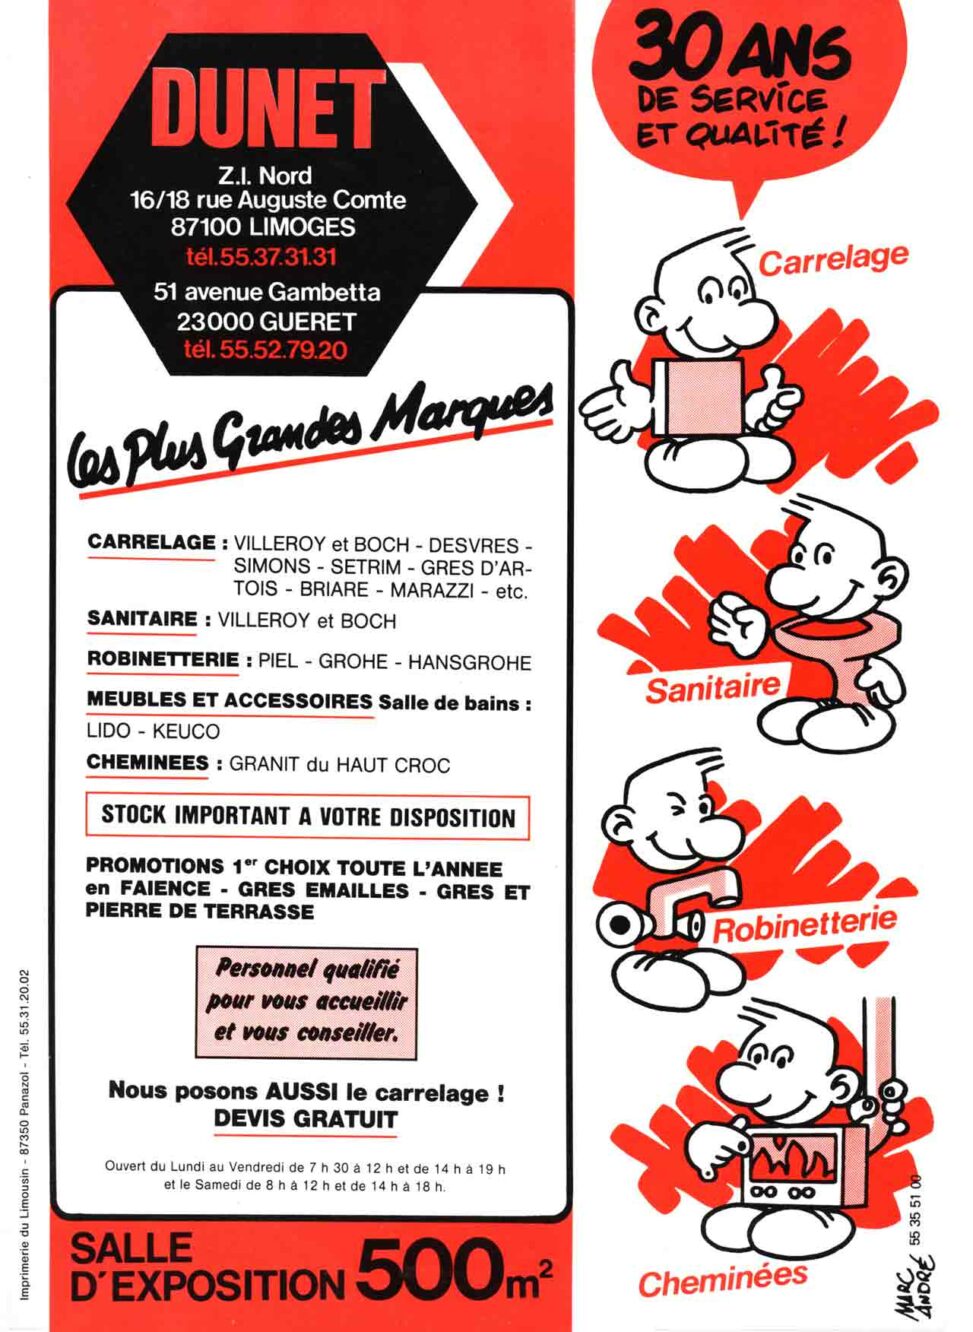 Flyer Carrelages Dunet 1987 - Marc-André BD Illustration Graphisme Limoges